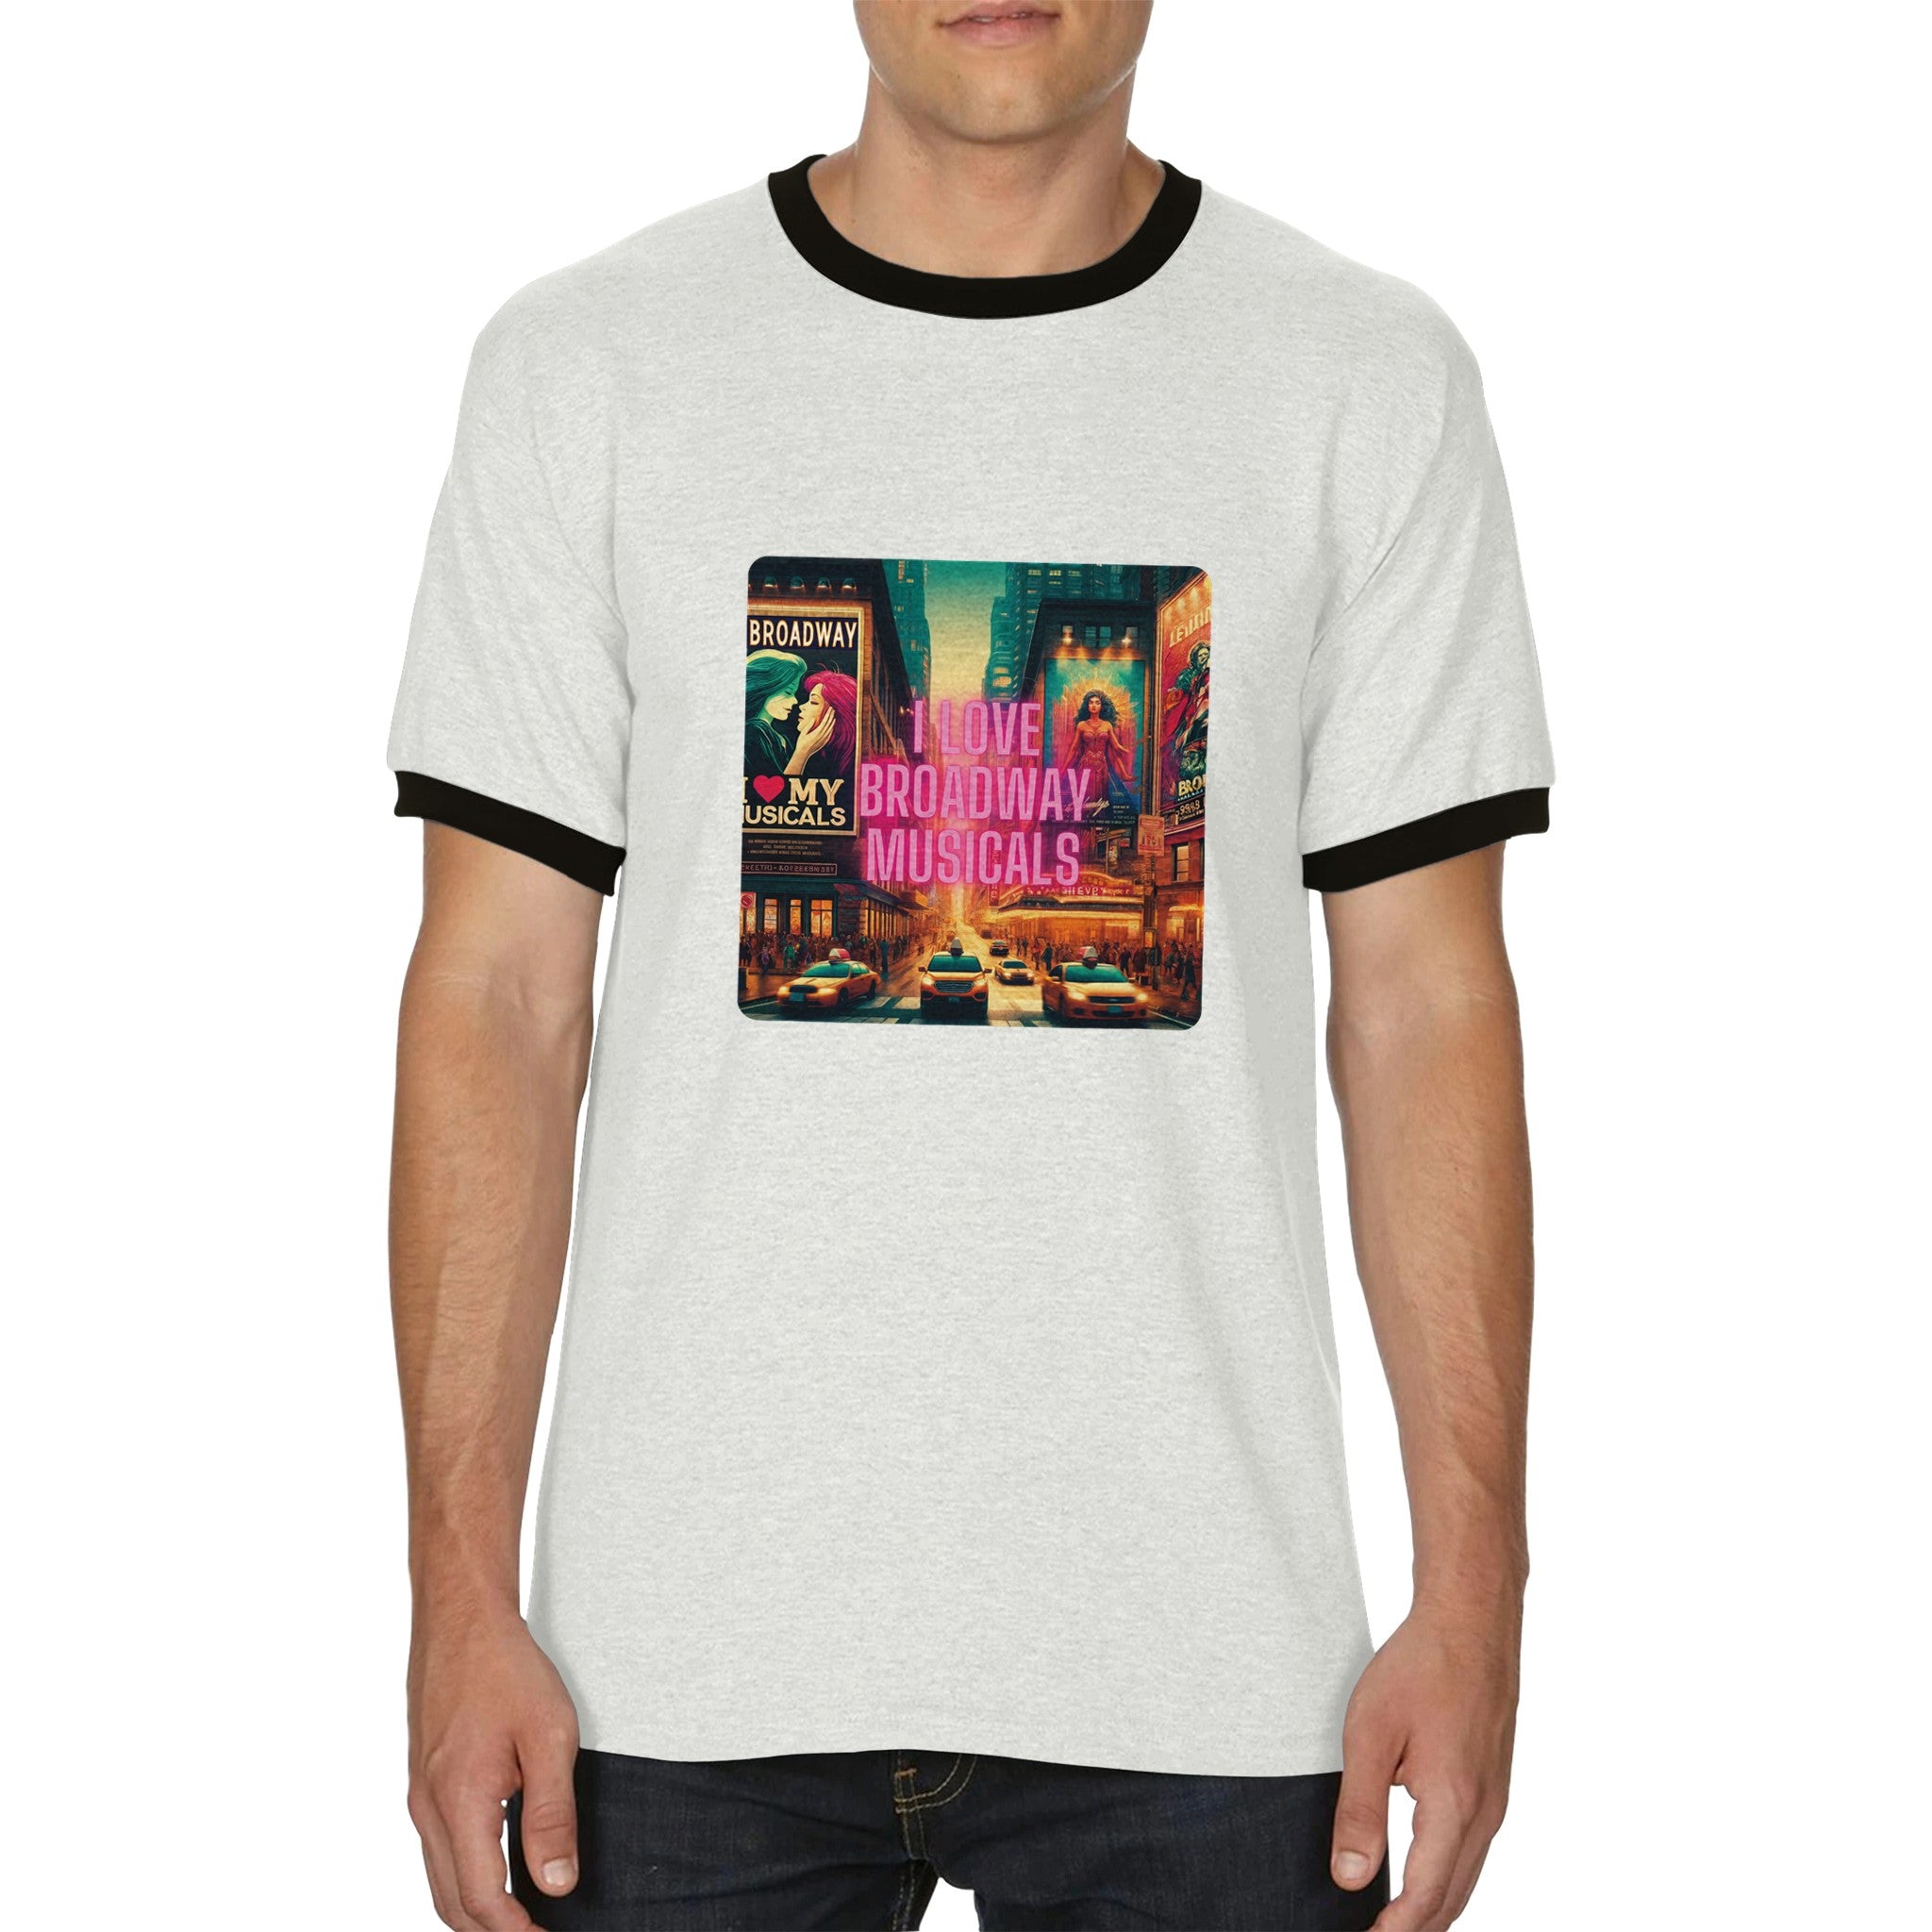 Unisex Ringer "I Love Broadway Musical" T-shirt